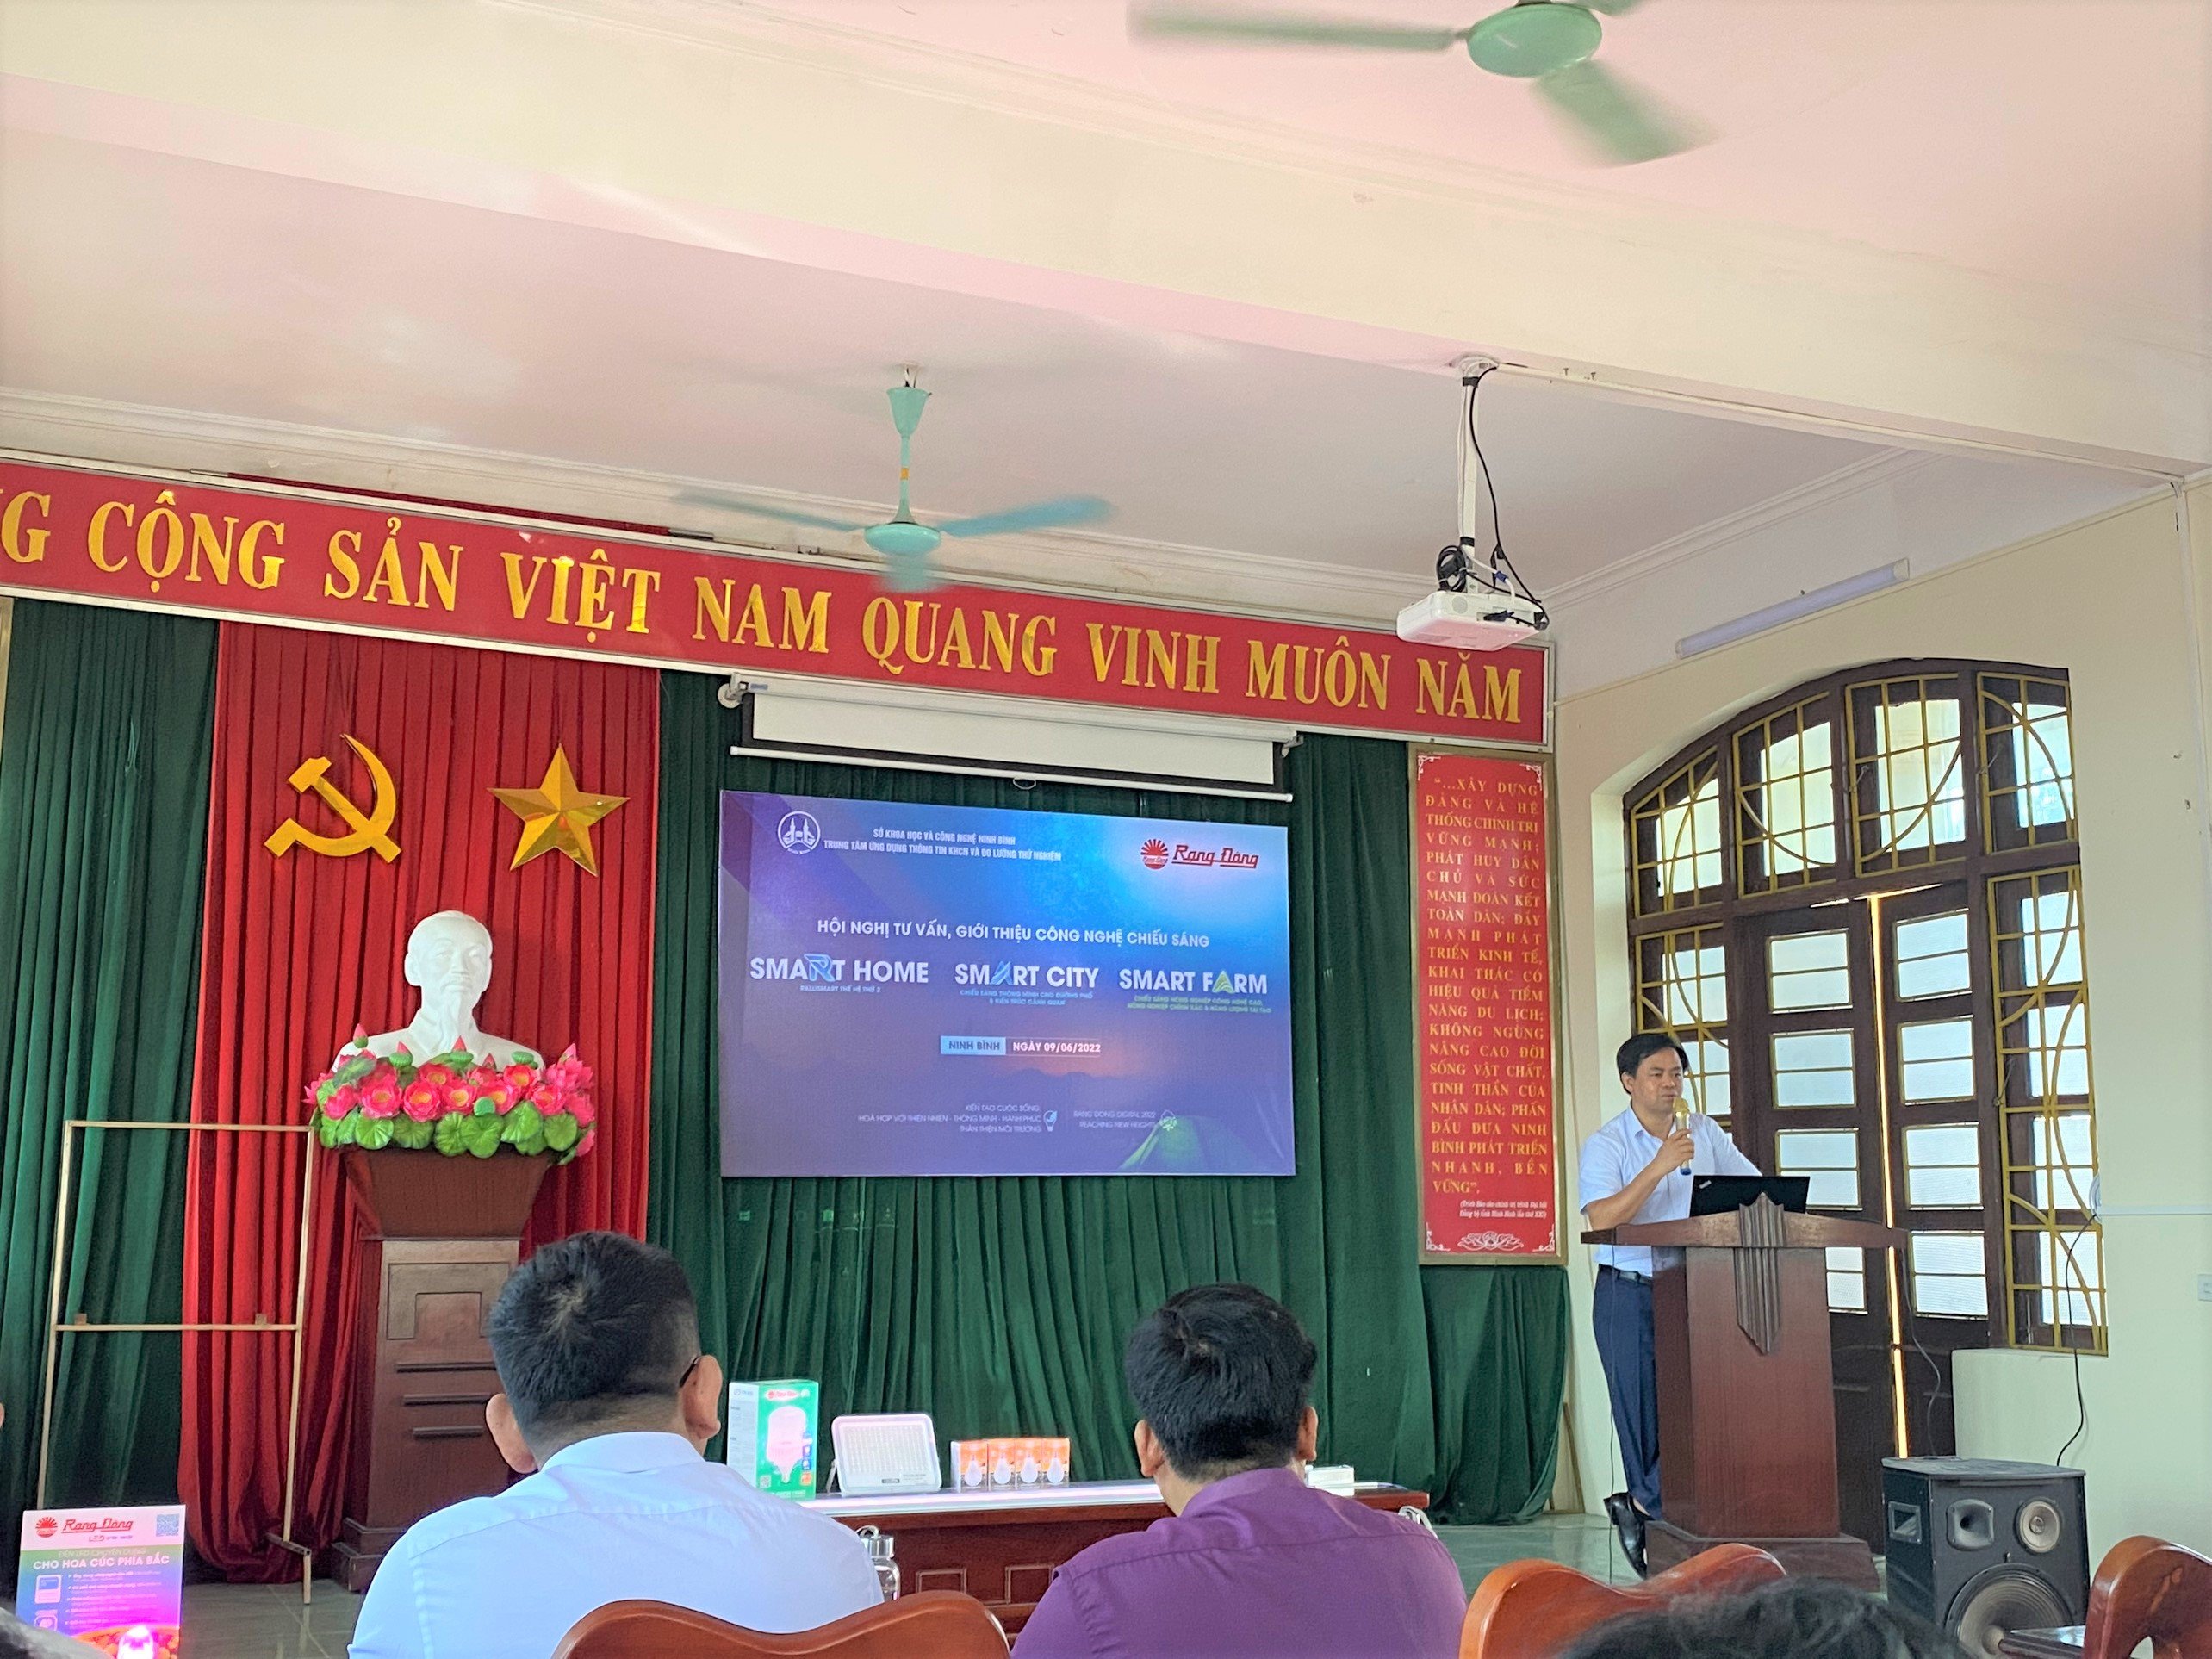 Rạng Đông tham dự Hội nghị tư vấn, giới thiệu công nghệ chiếu sáng tại Ninh Bình